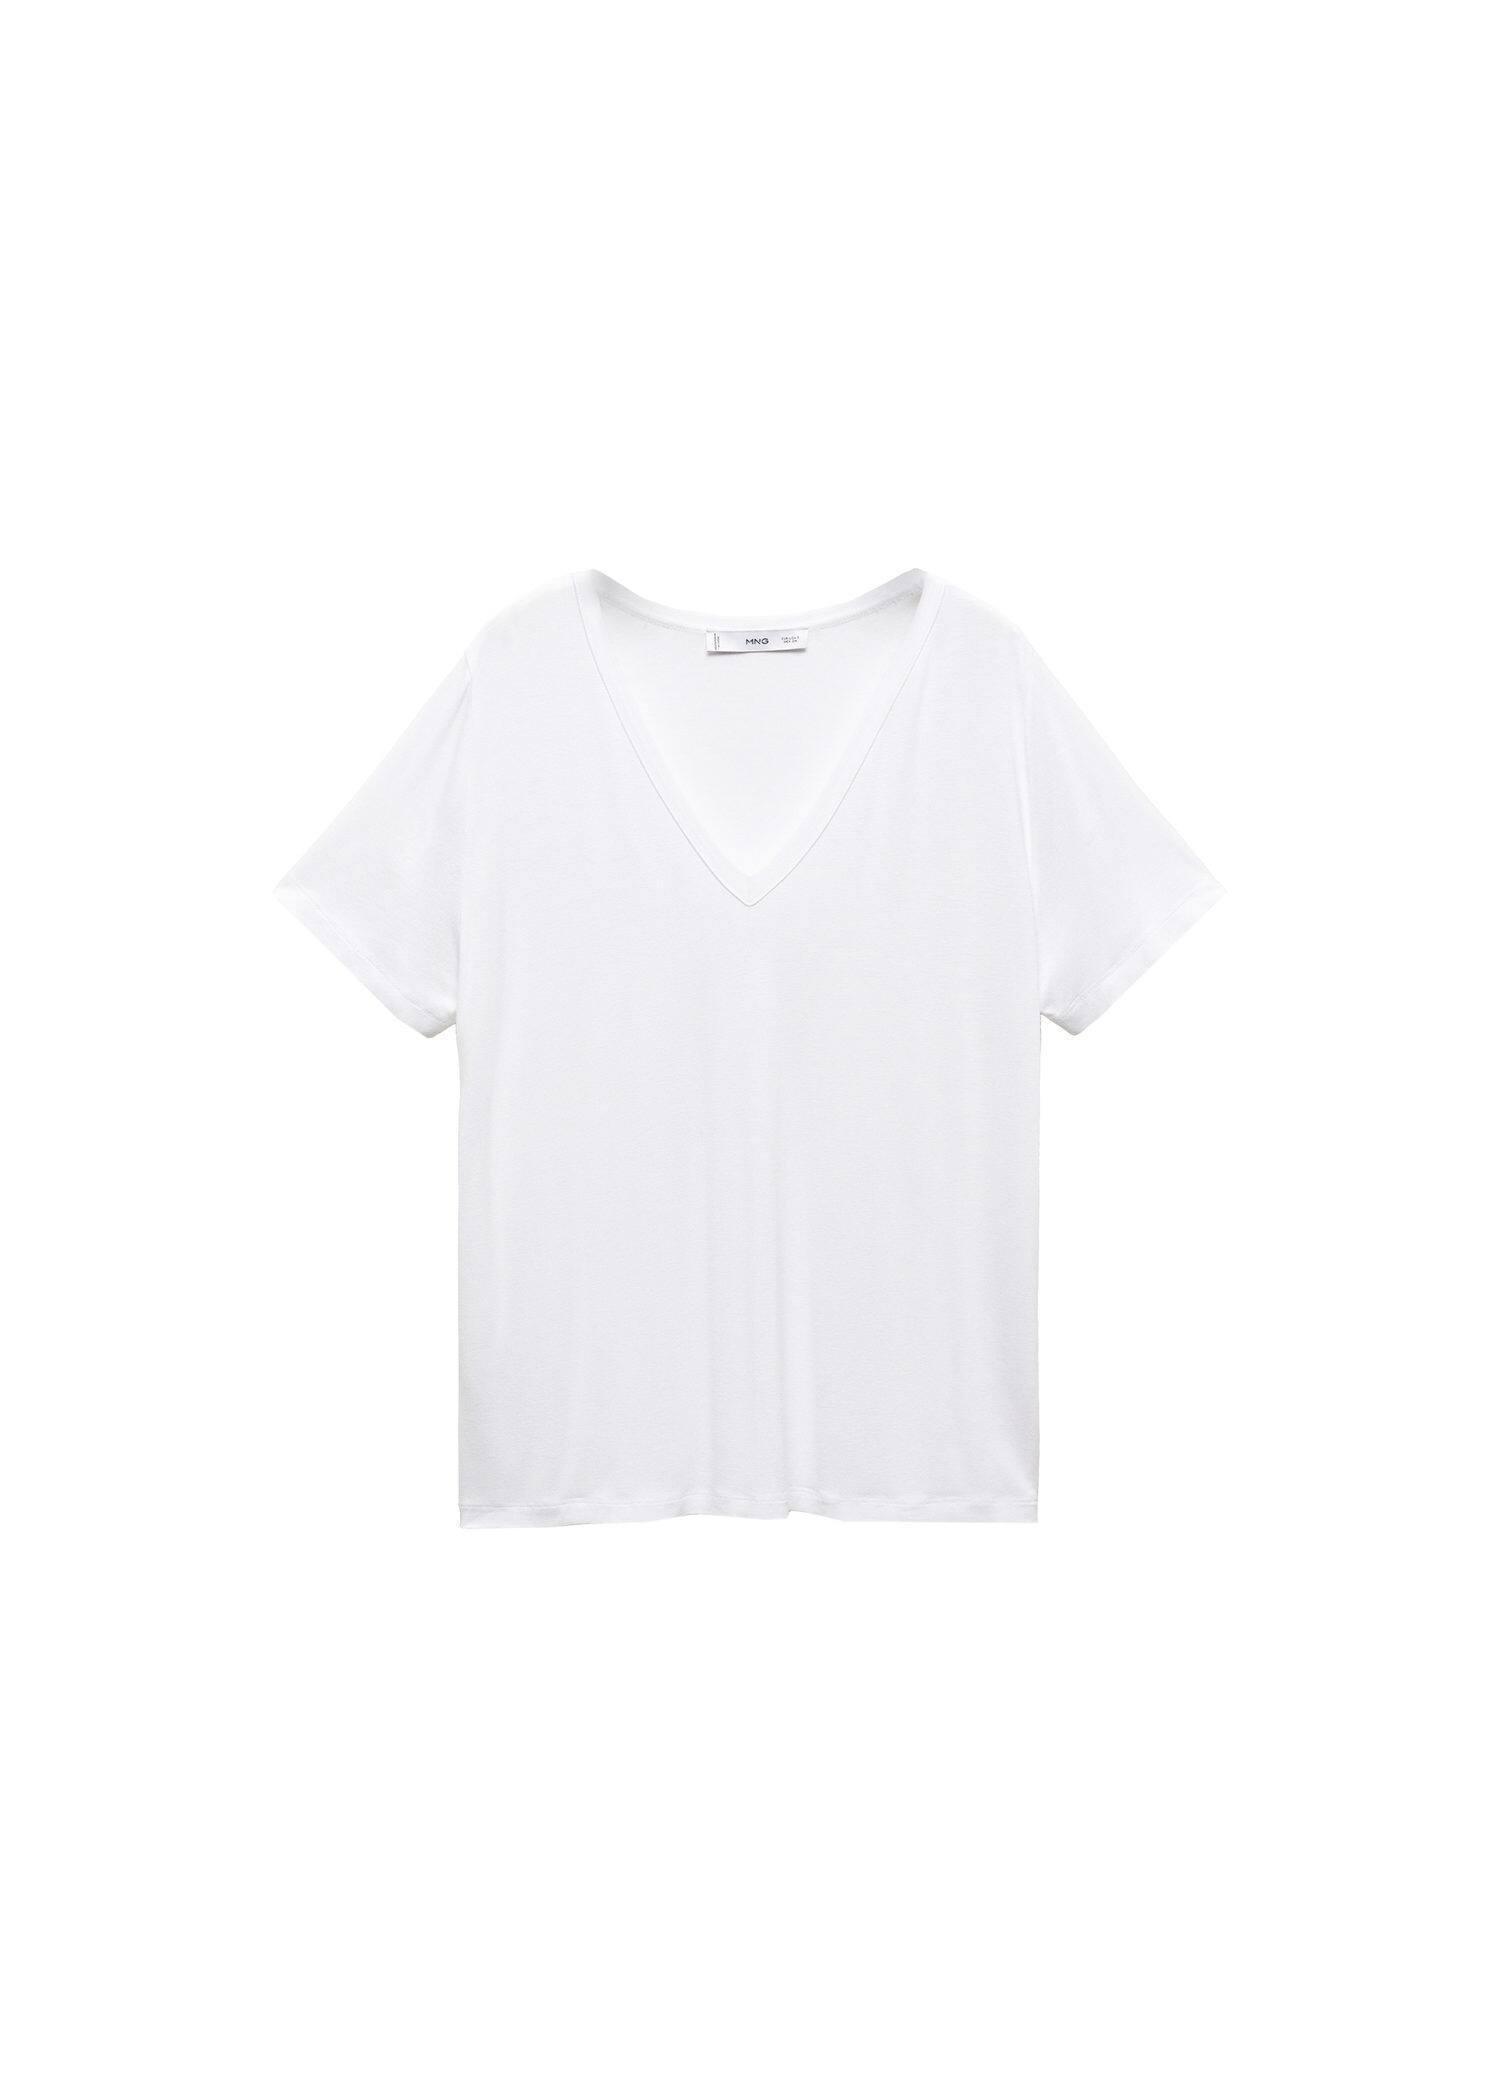 Mango - White V-Neck T-Shirt